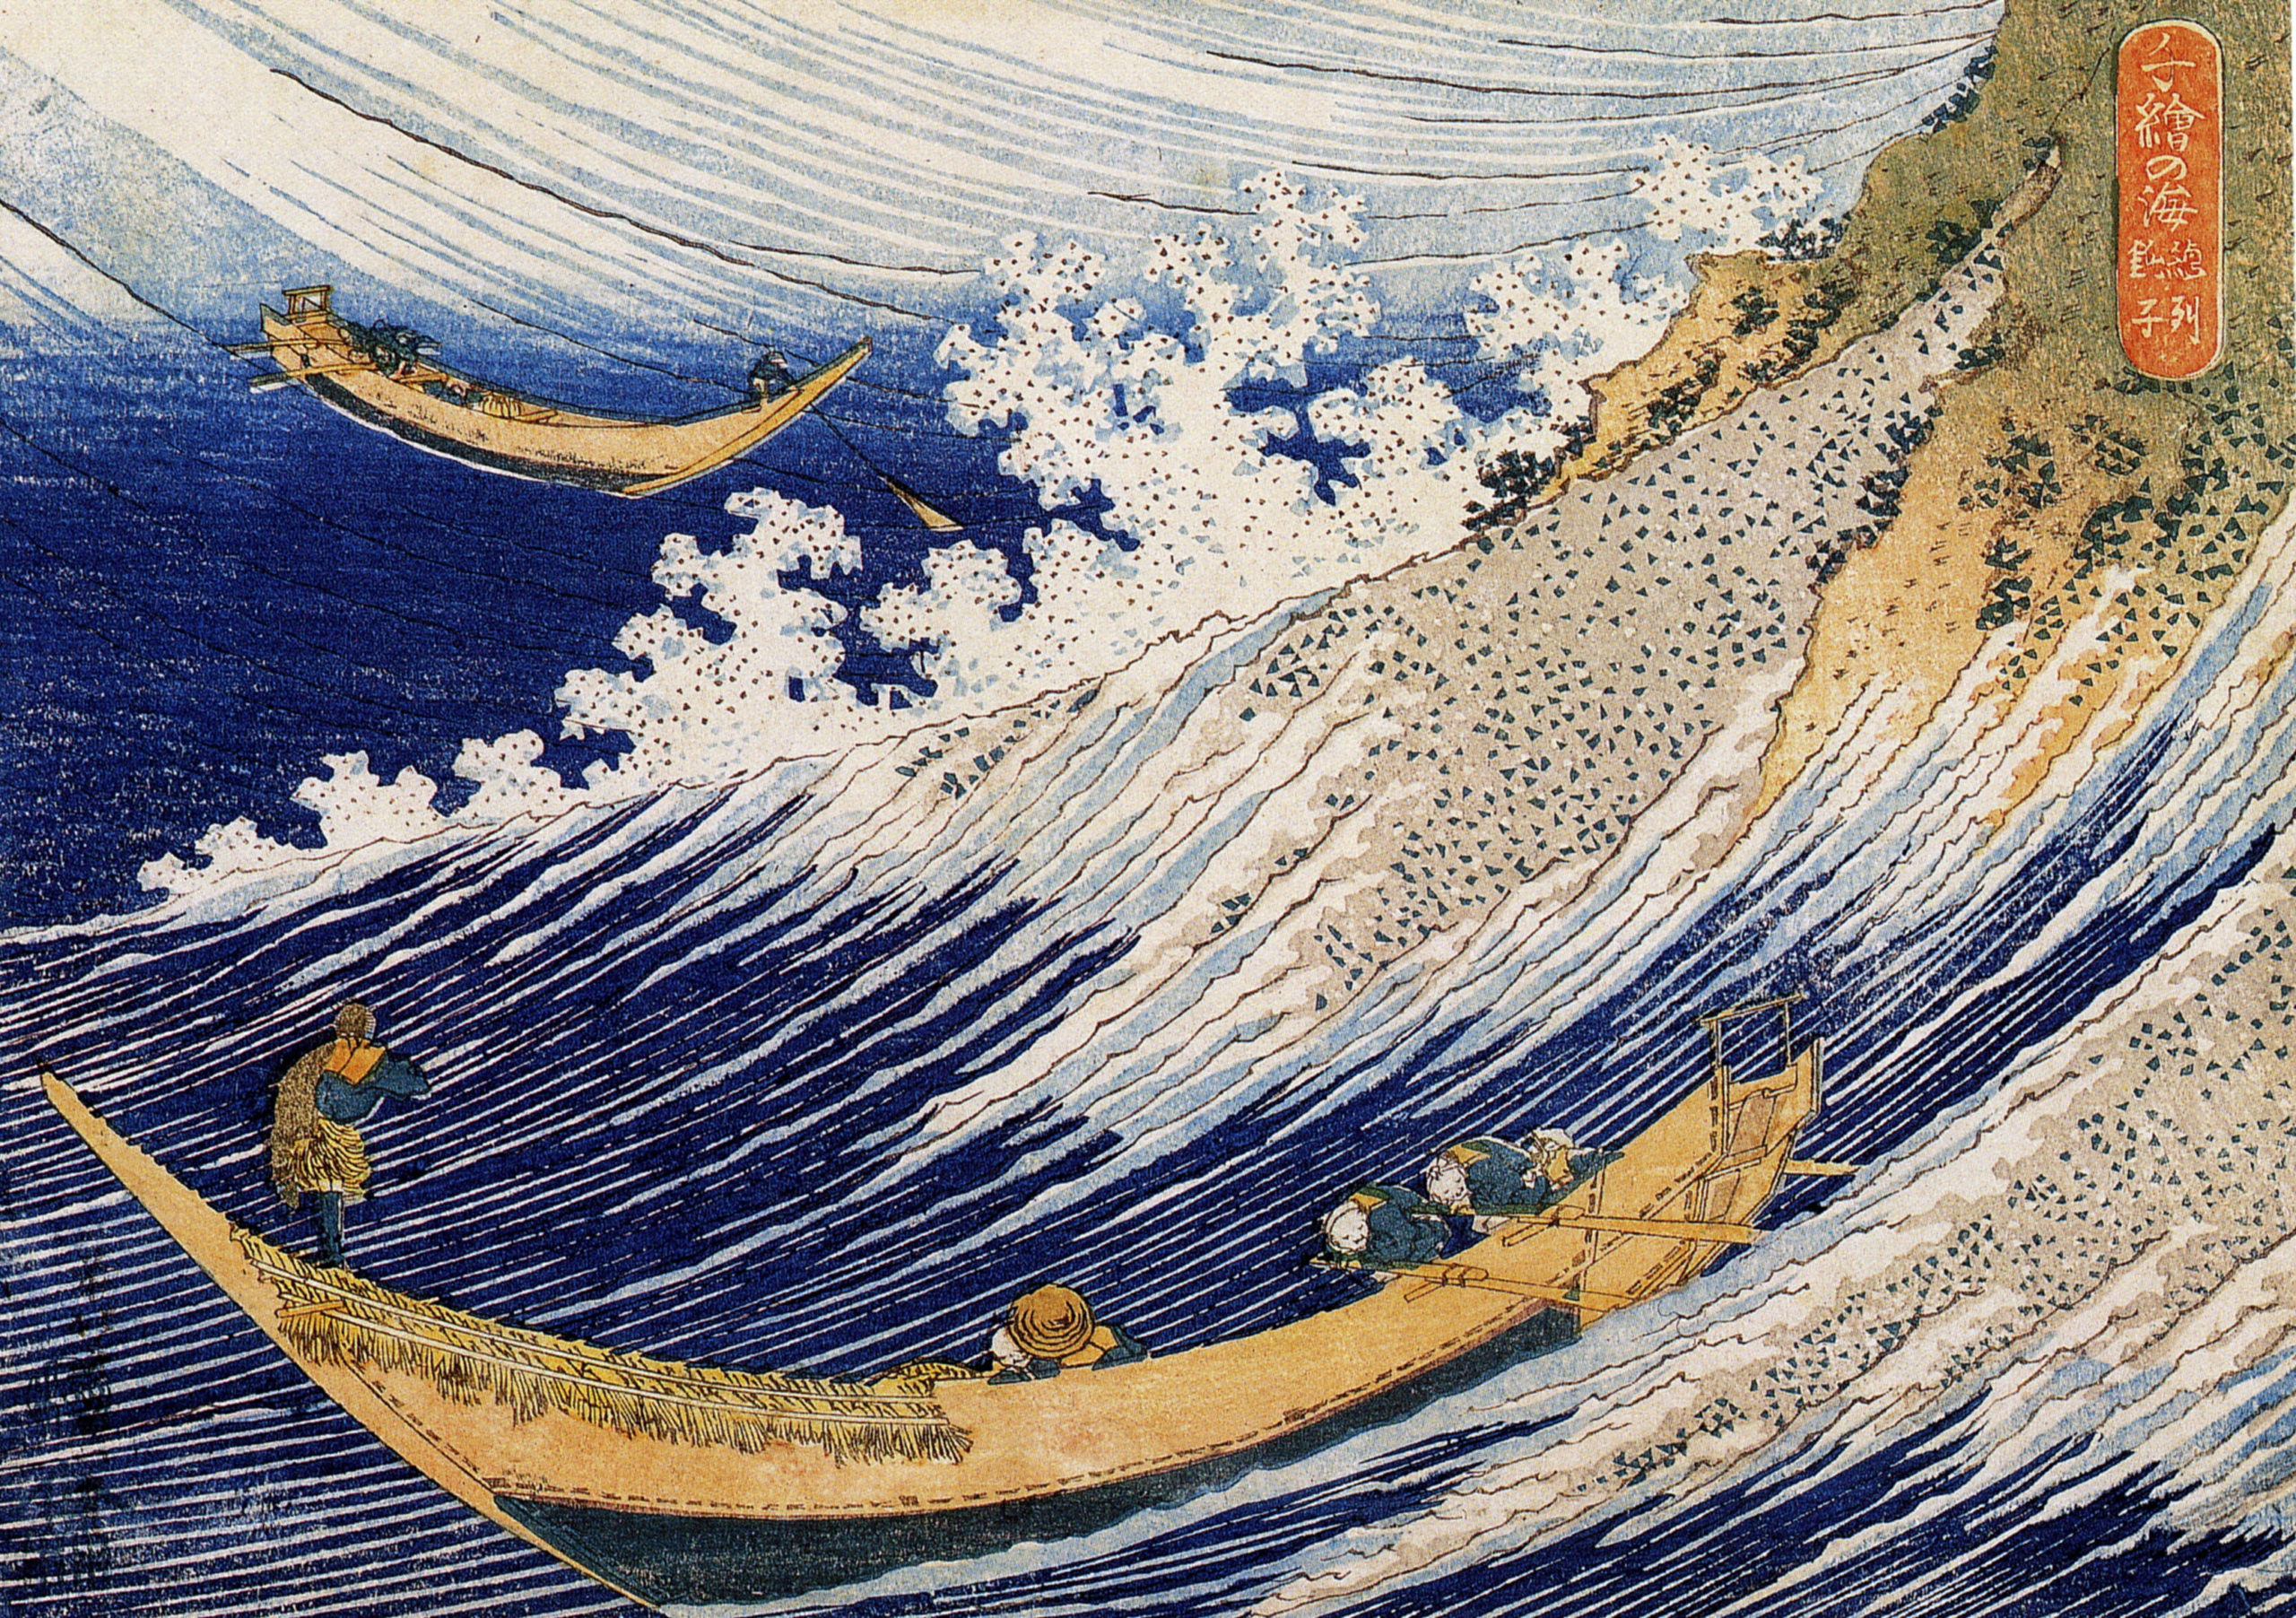 Hokusai The Great Wave Soshu Choshi fisshing boats Woodblock Re-print Ukiyo-e 